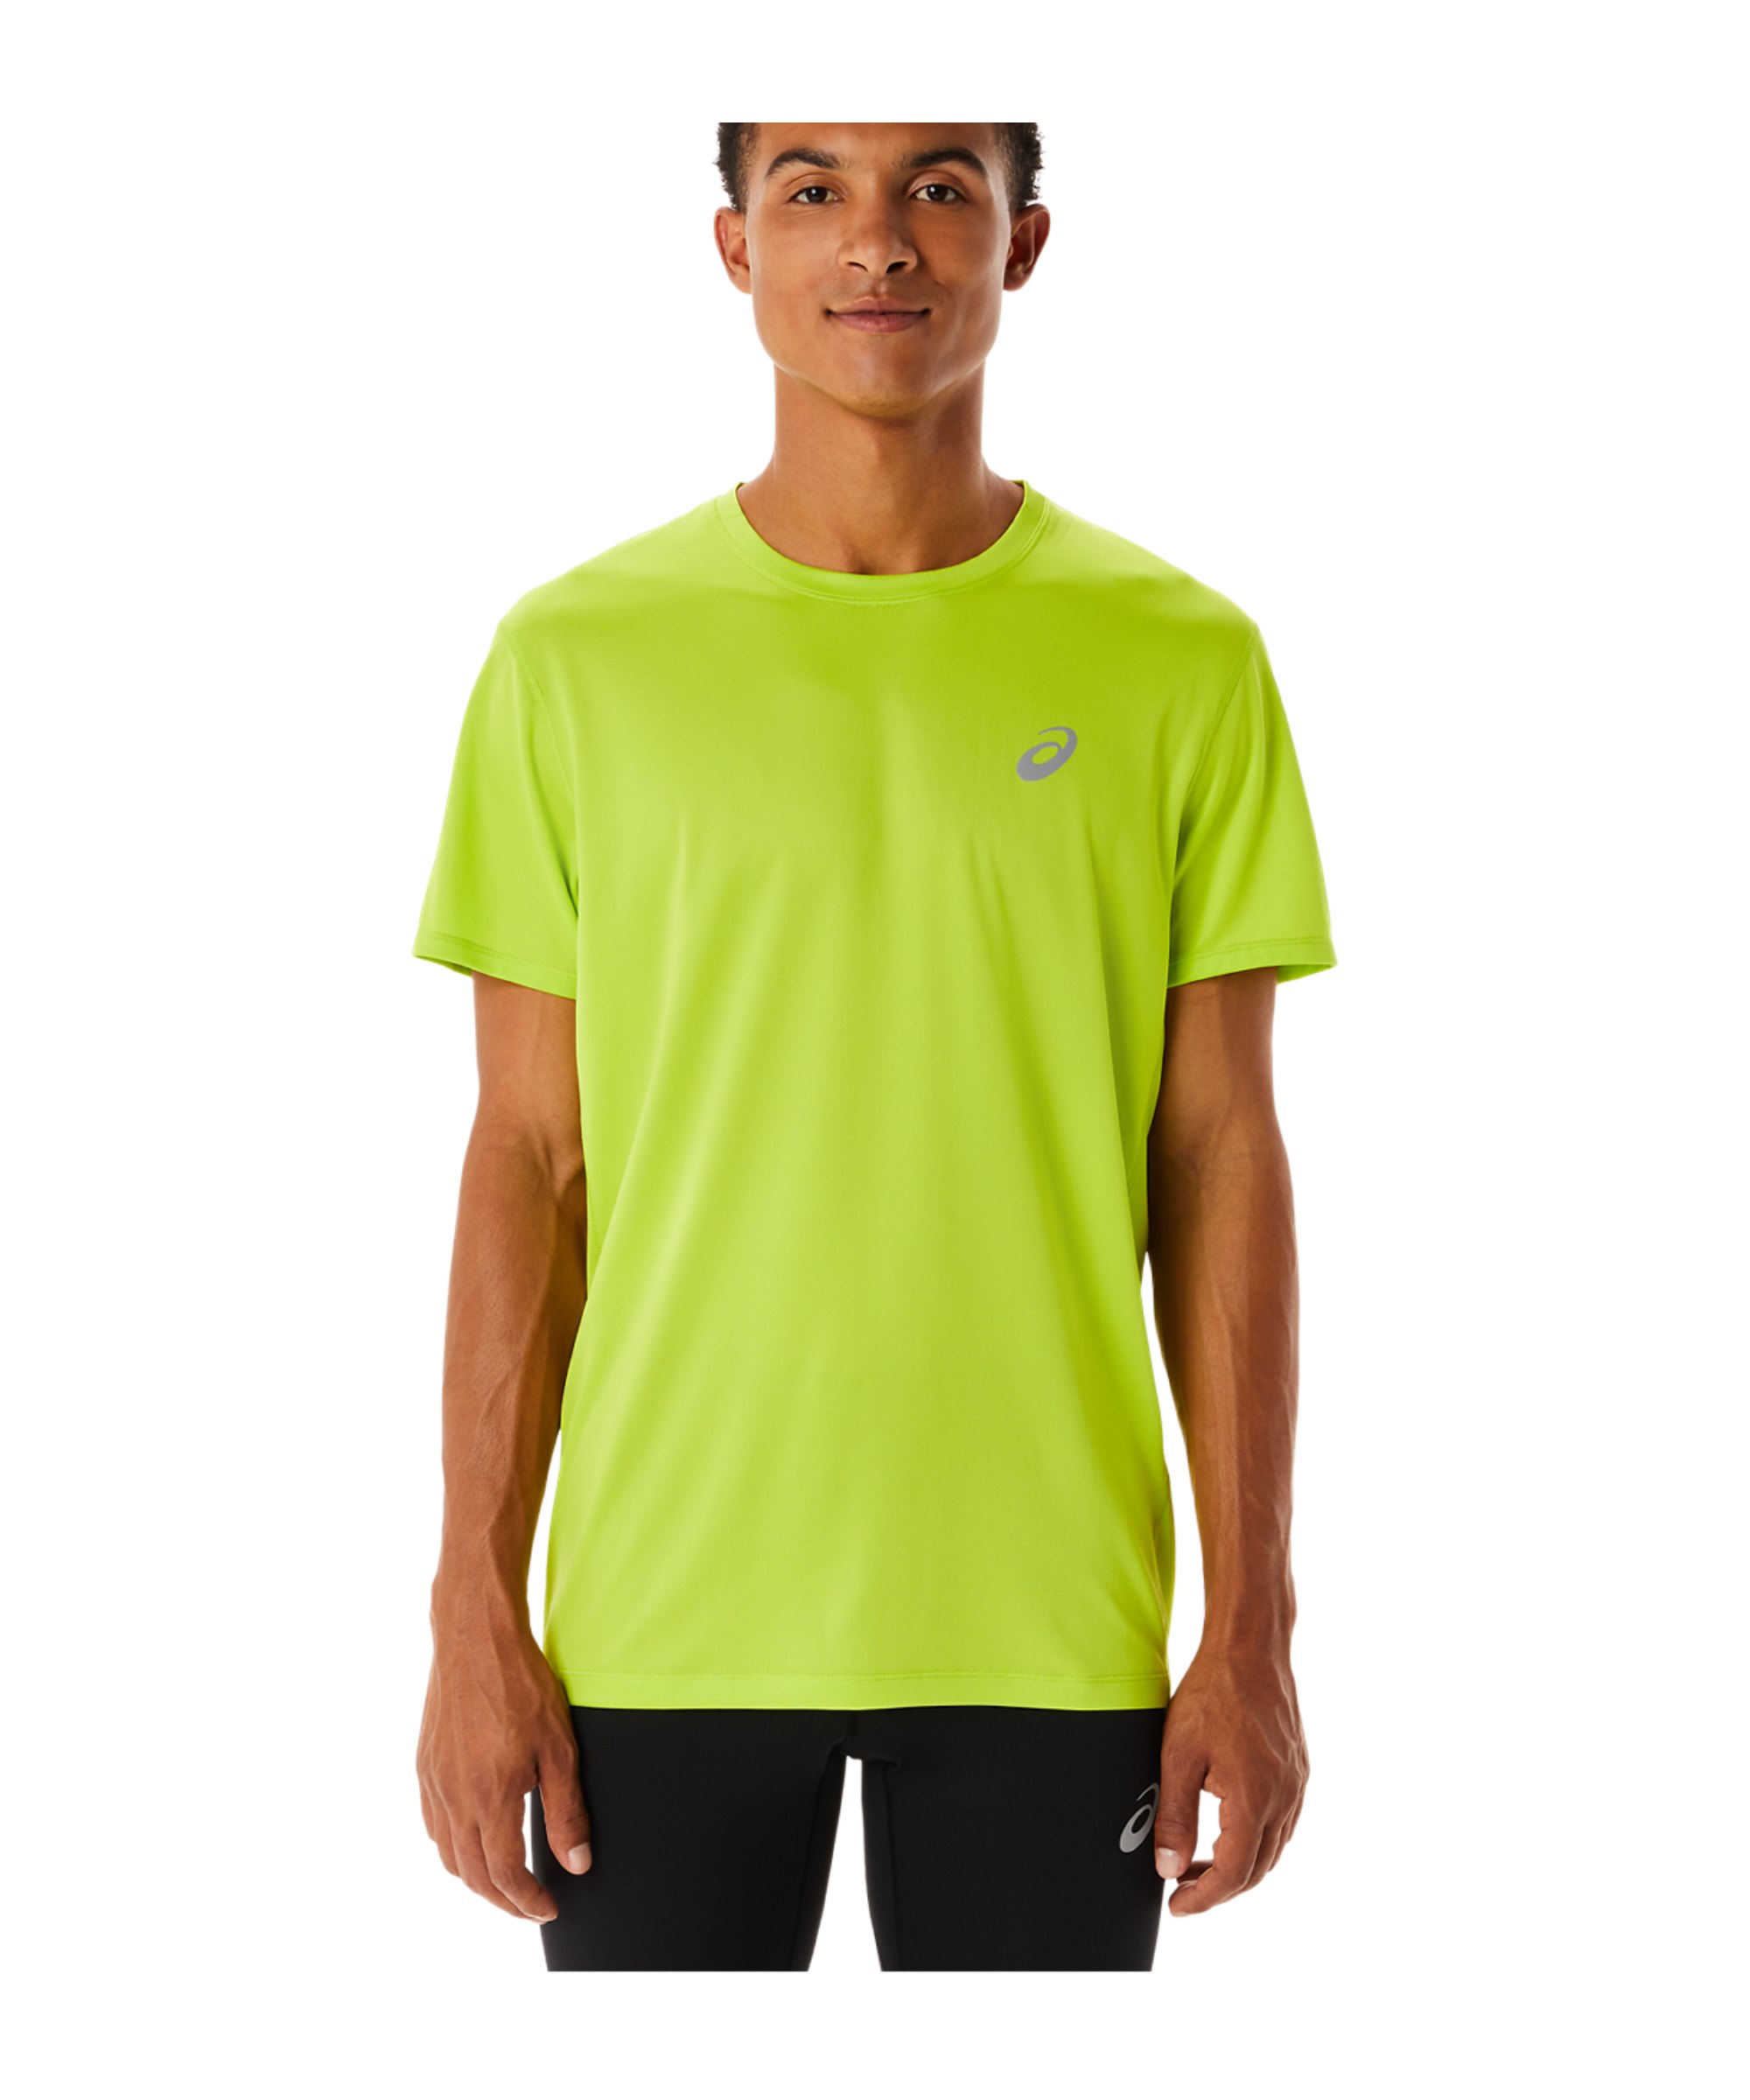 Asics Core T-Shirt Grün F302 schwarz